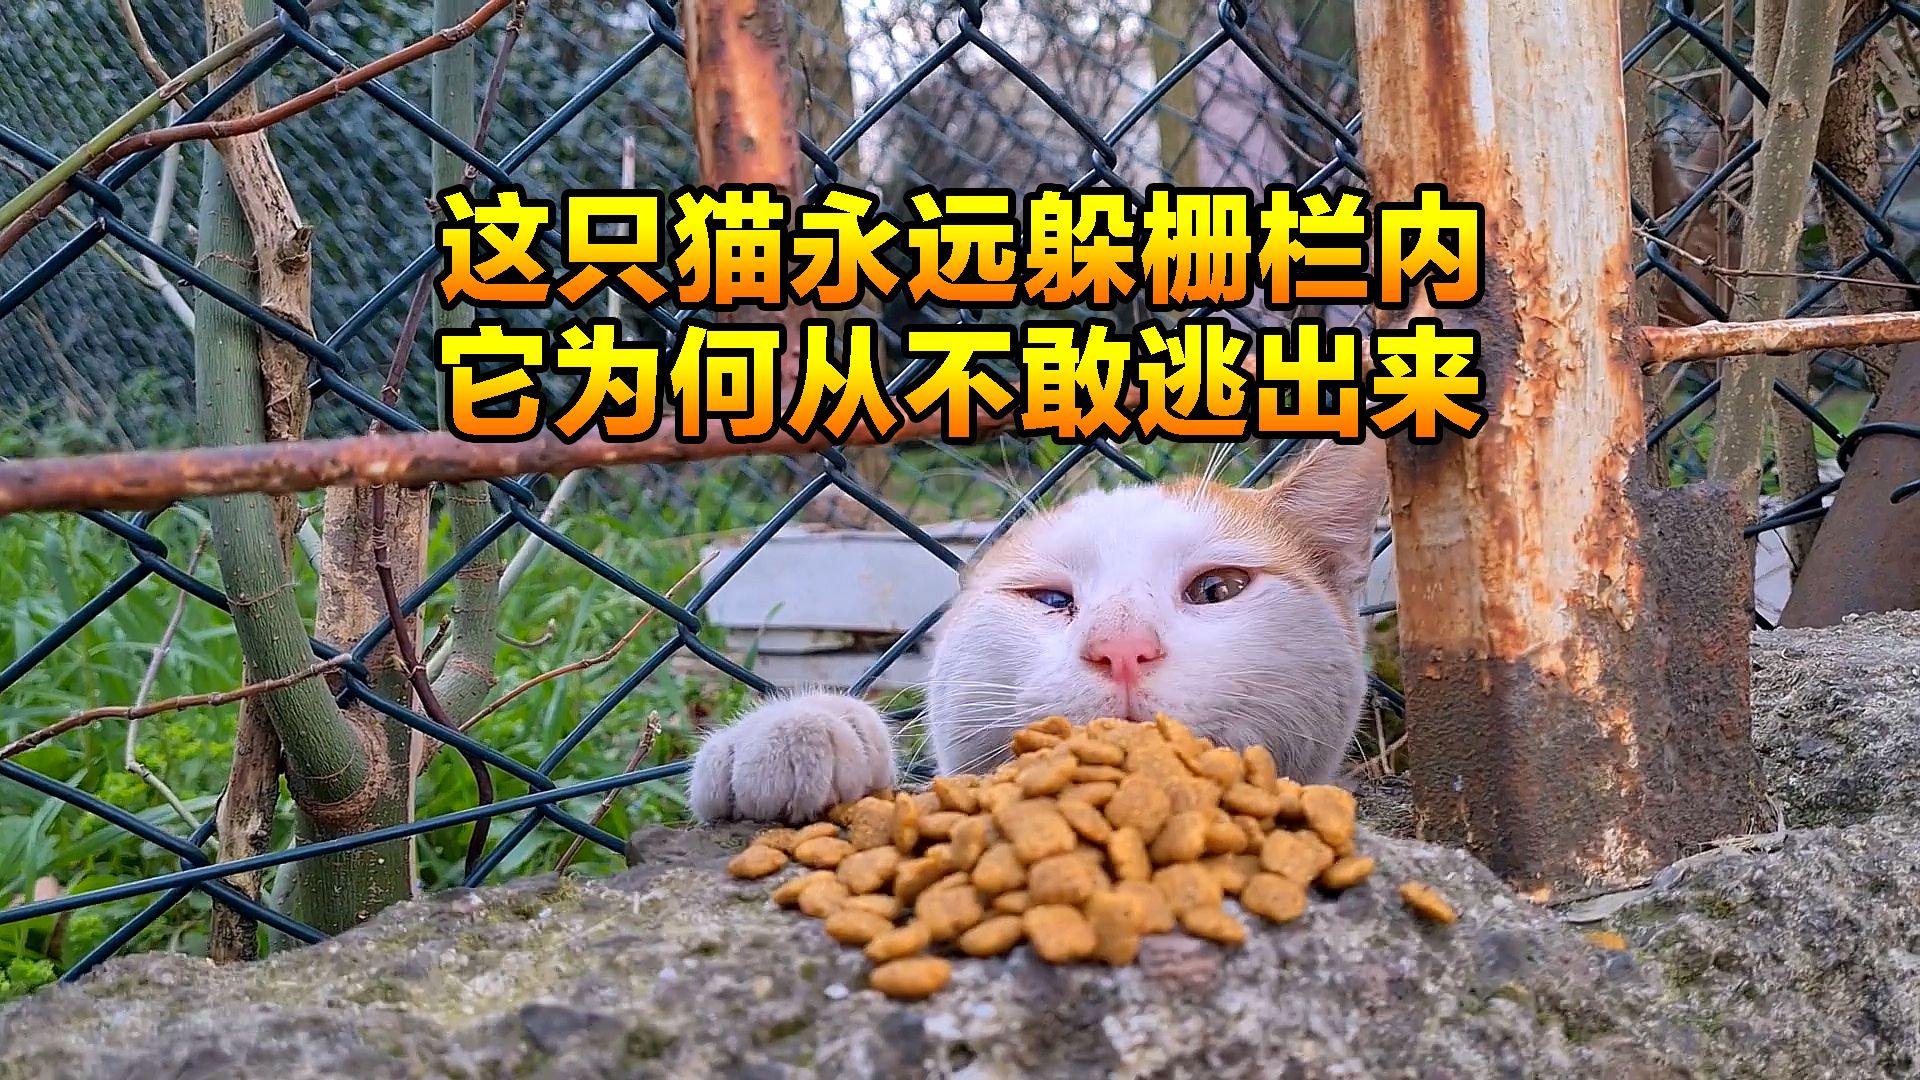 流浪猫每天躲在栅栏内，任何人喂食物都不肯出来，究竟怎么回事呢